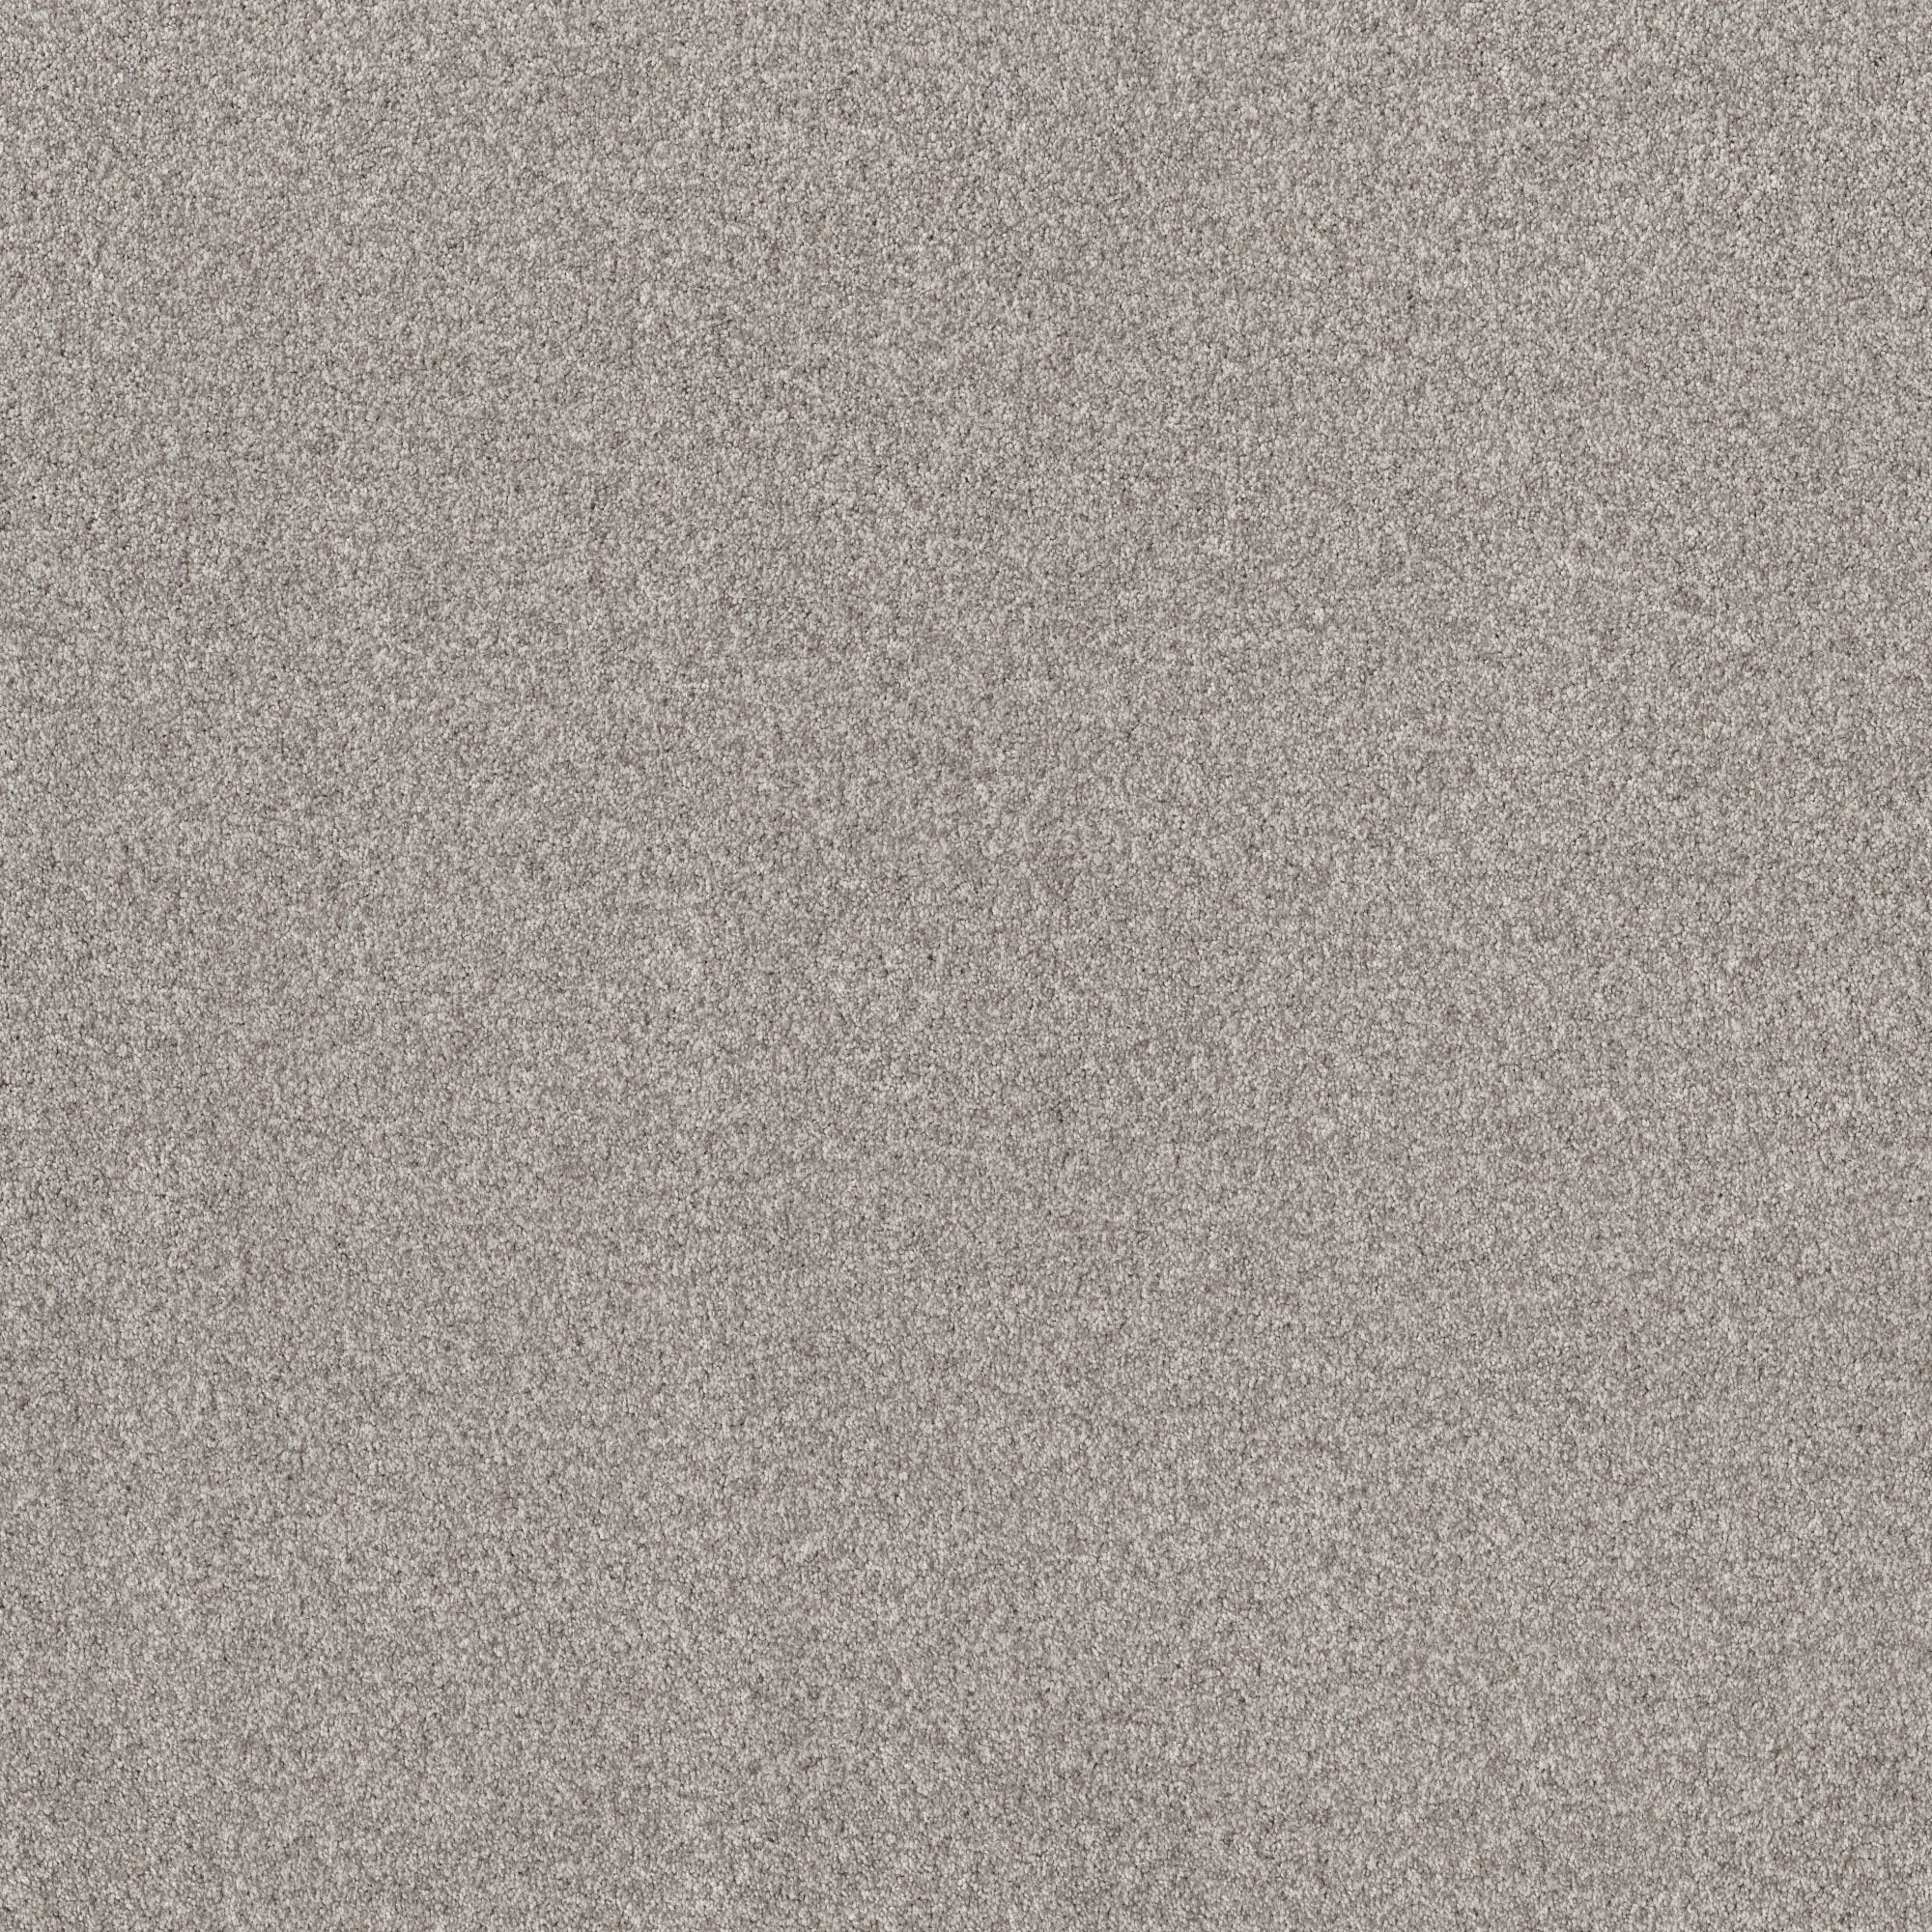 Reverie Iii Platinum Textured Carpet In